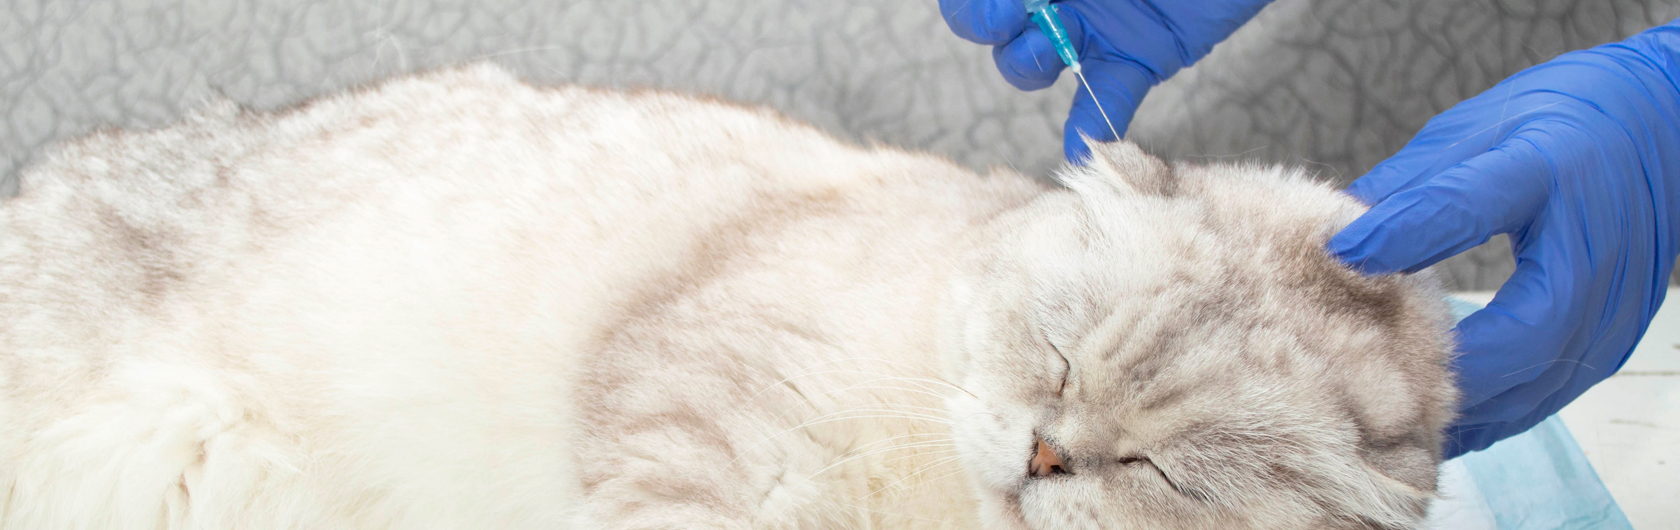 vacunacion en gatos y alimento balanceado para gatos de calidad